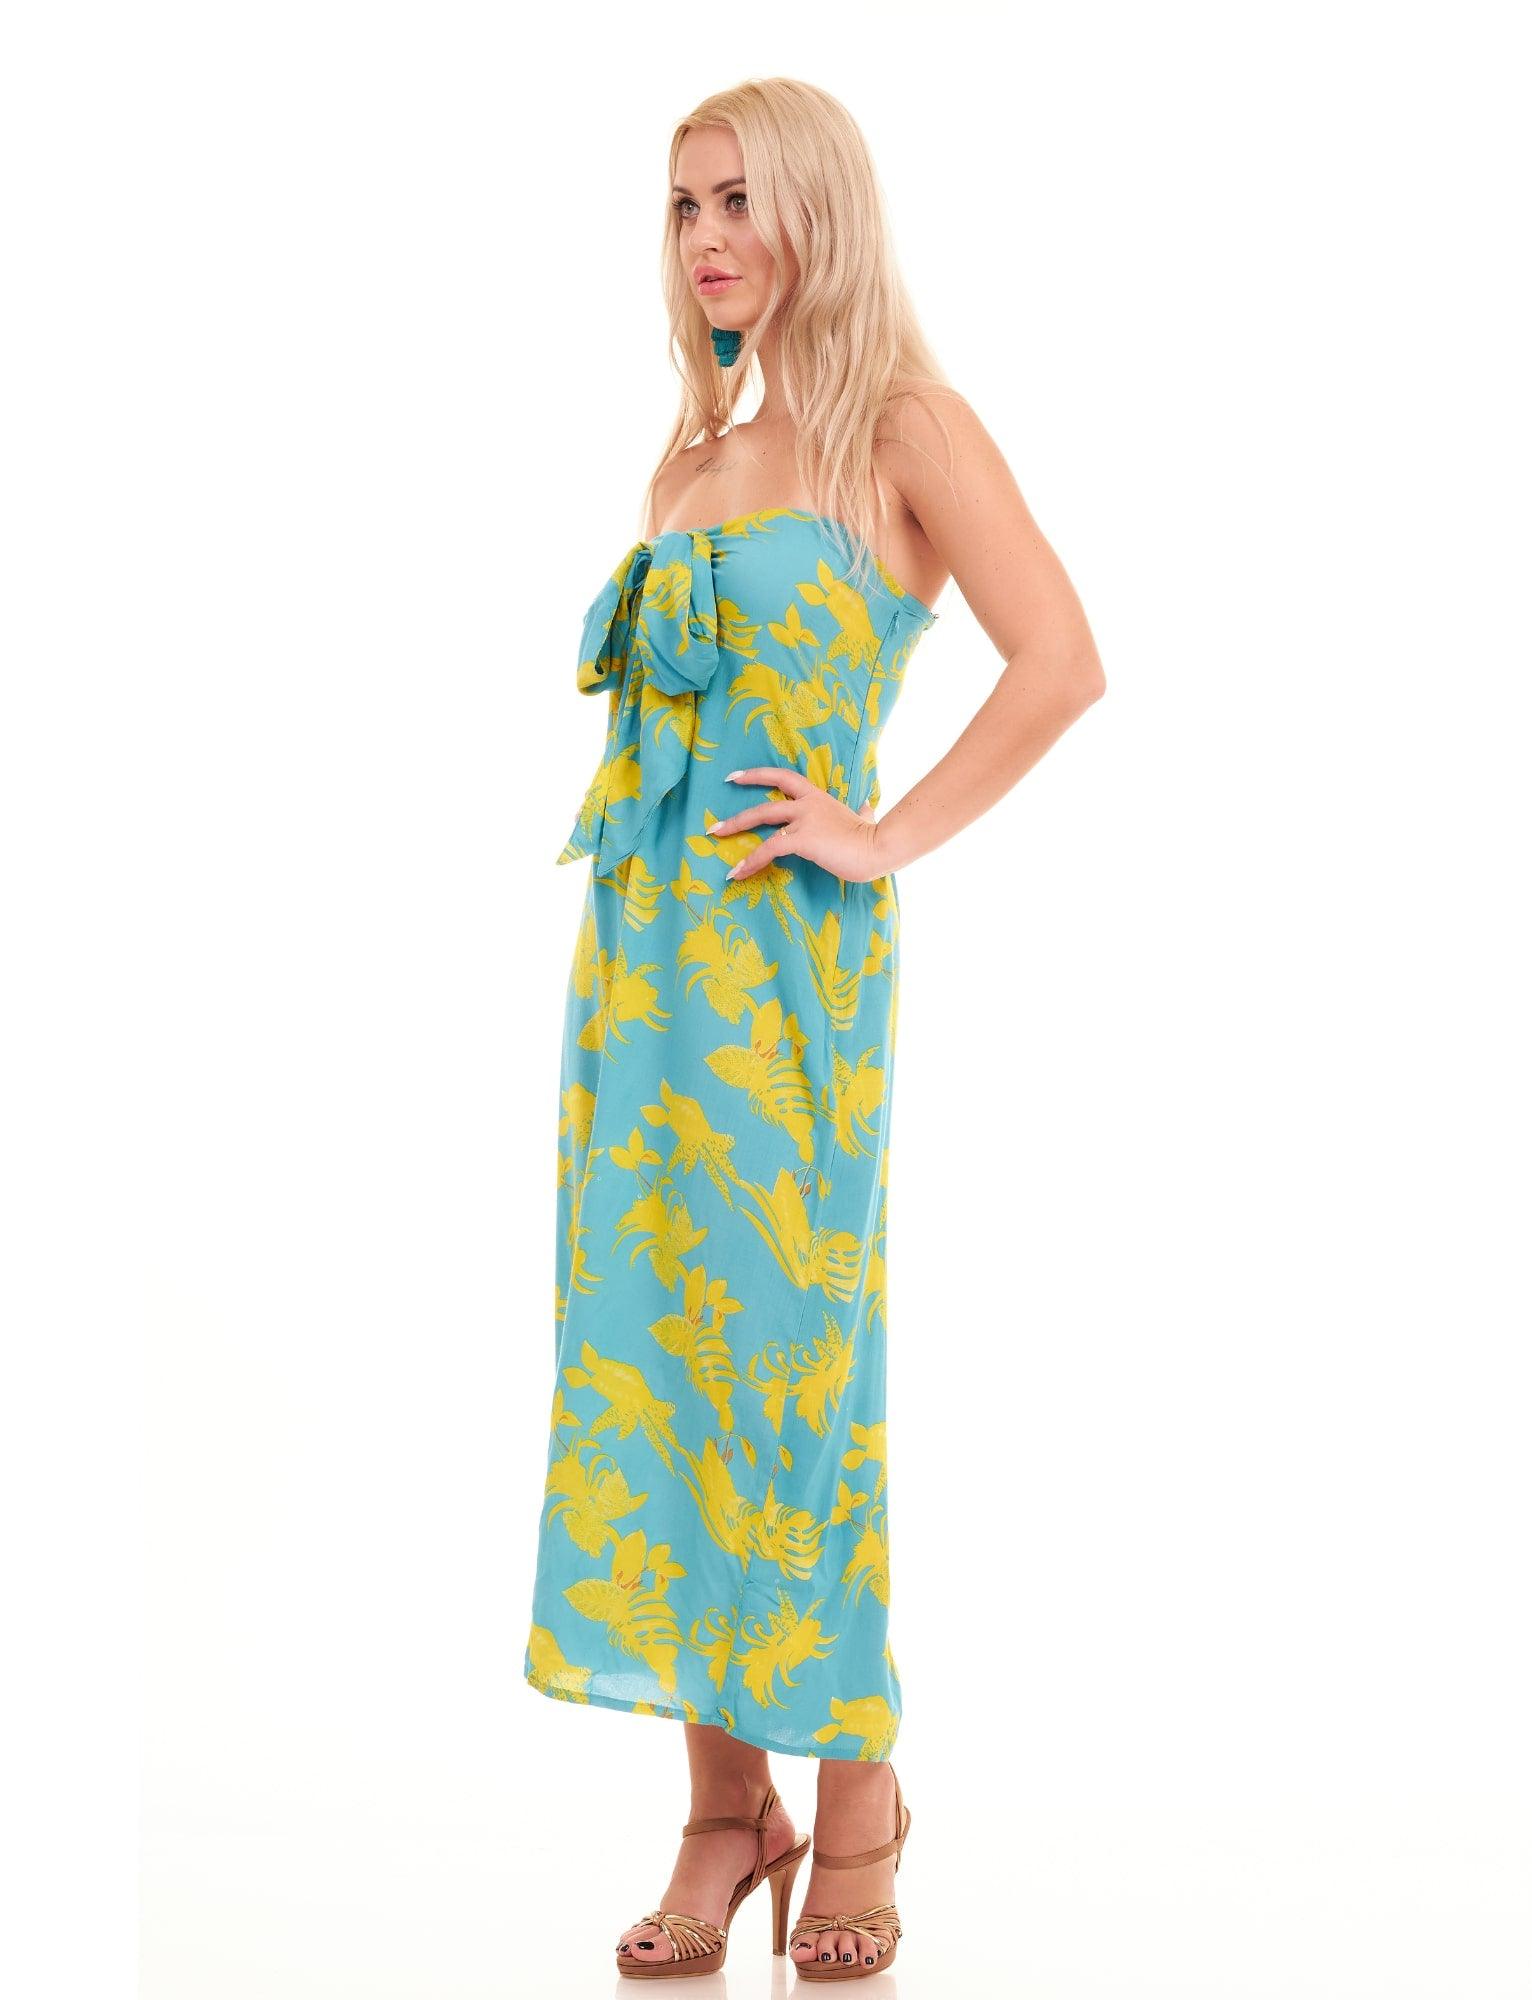 AMALFI DRESS - SUNFLOWERS - Woman Dress - Acqua Bonita